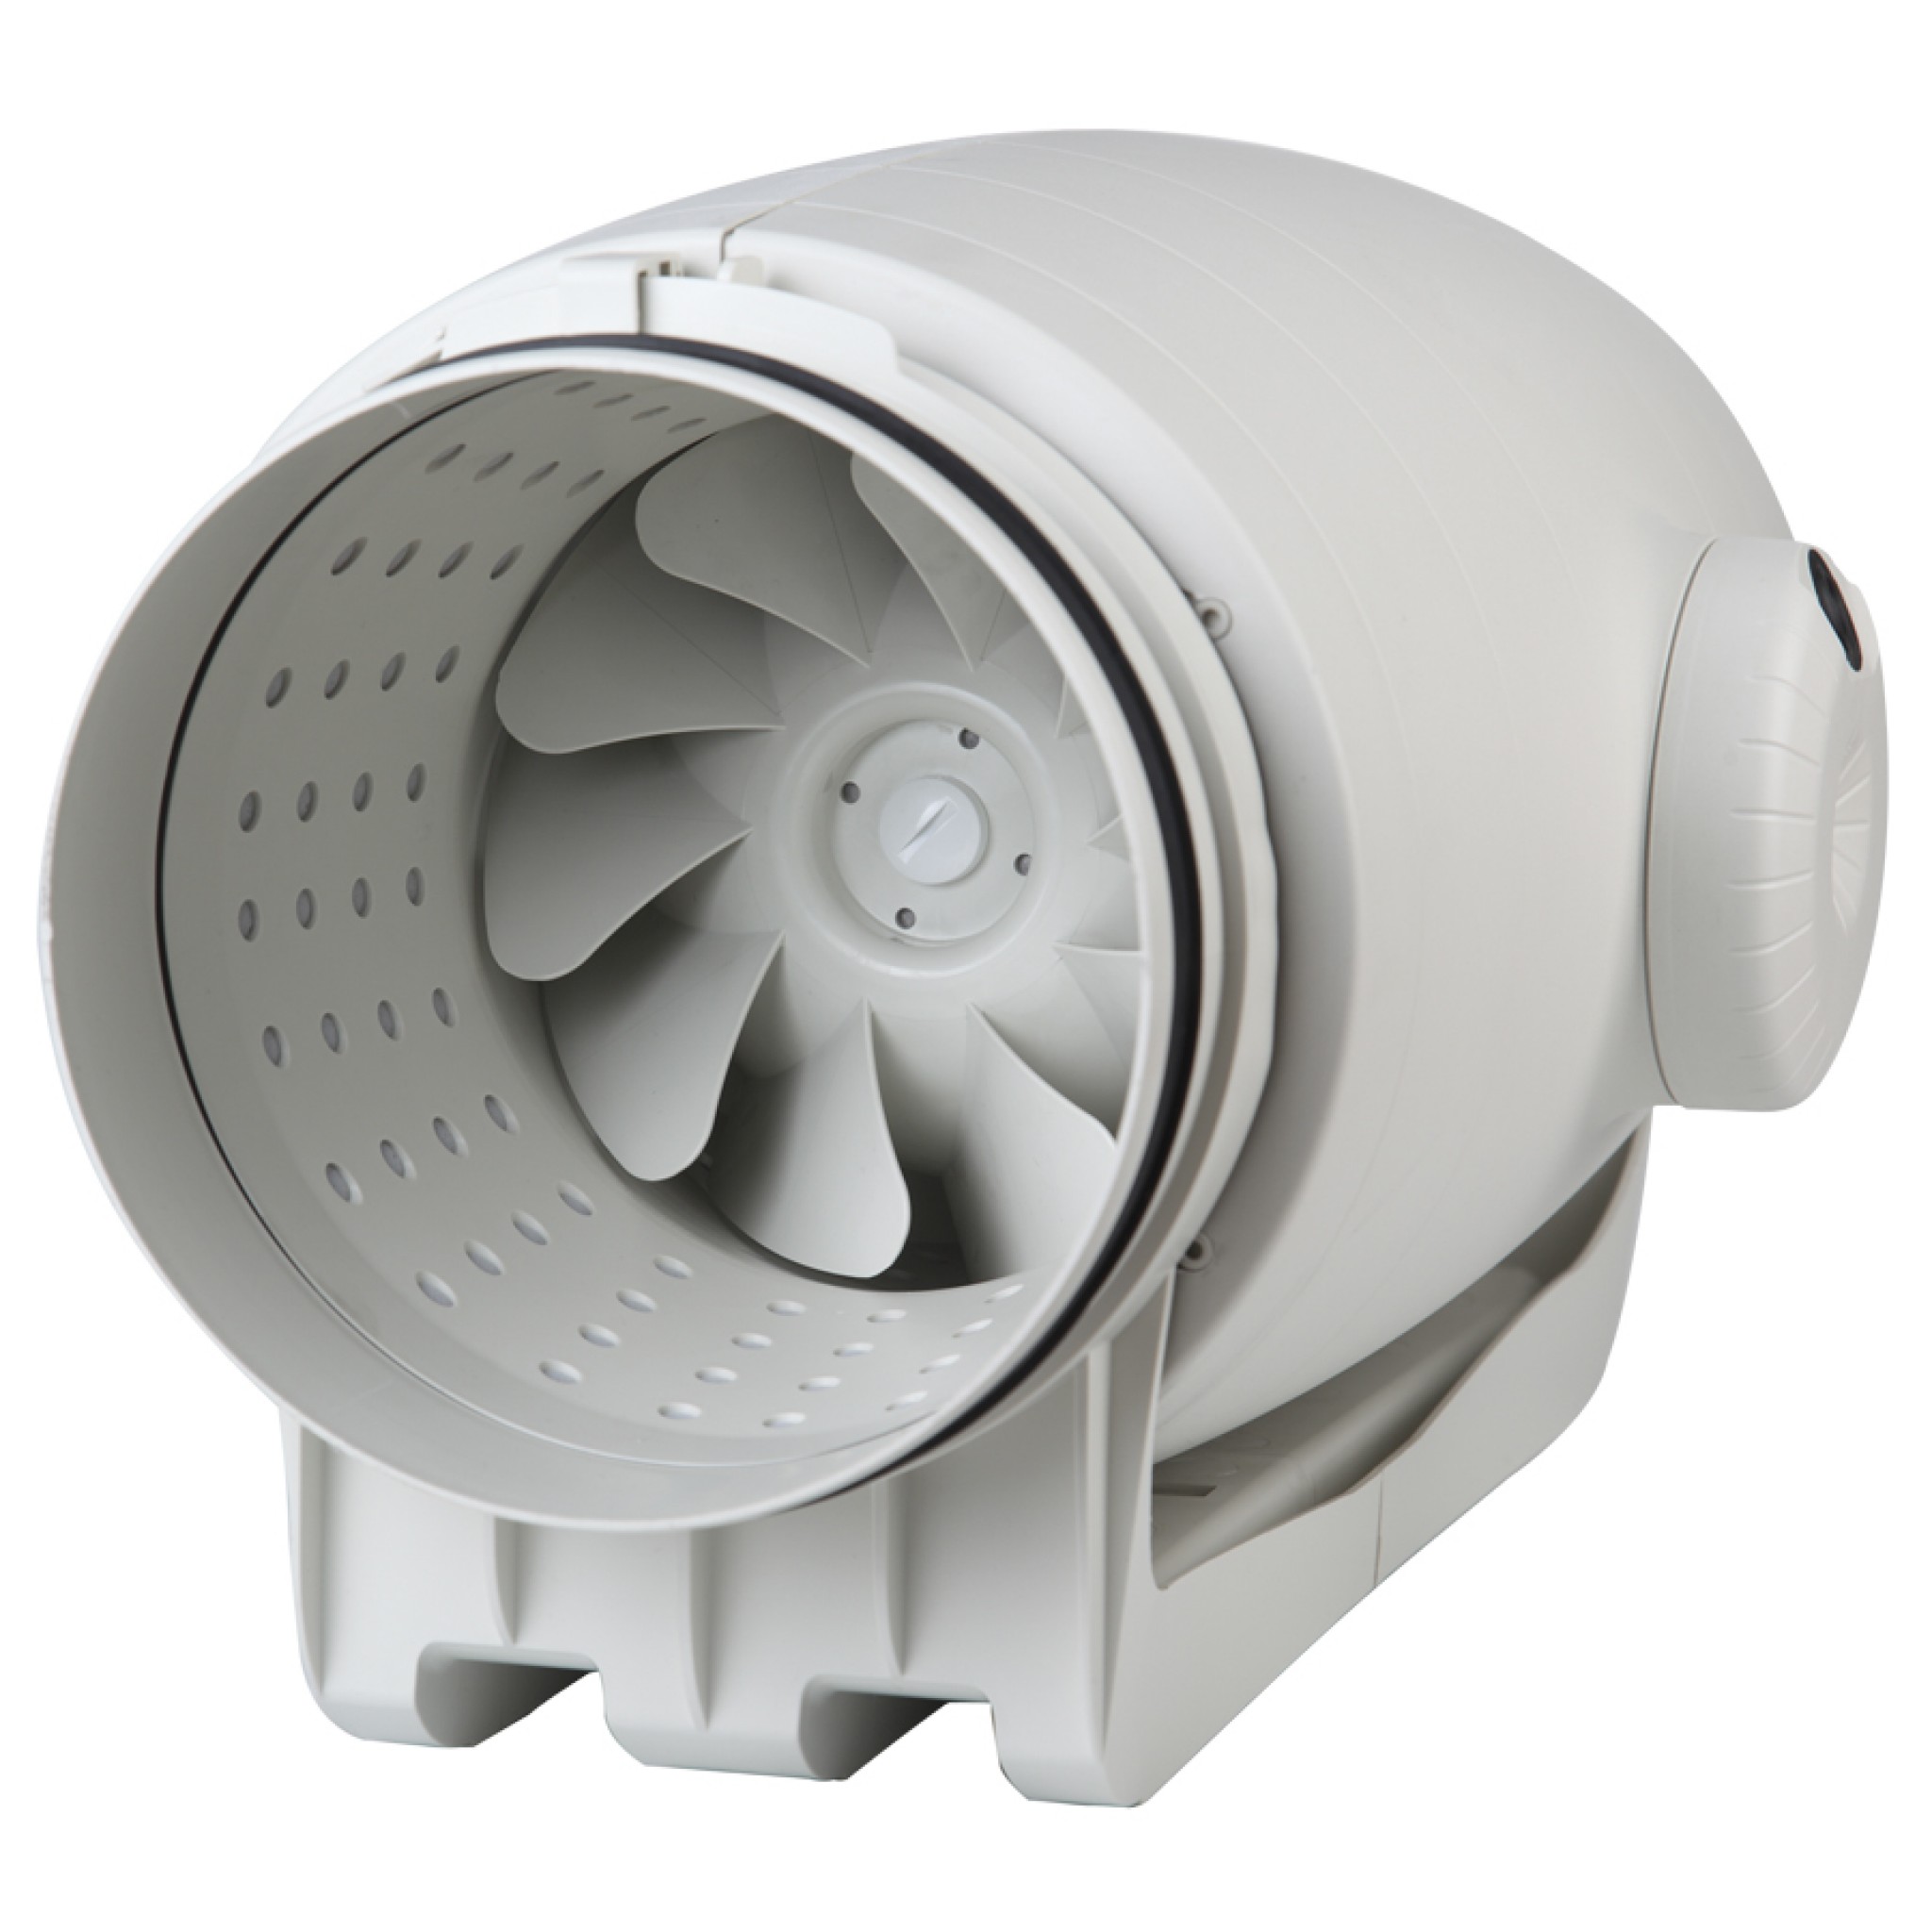 Канальный вентилятор для гаража Soler&Palau TD-1300/250 Silent Ecowatt VE